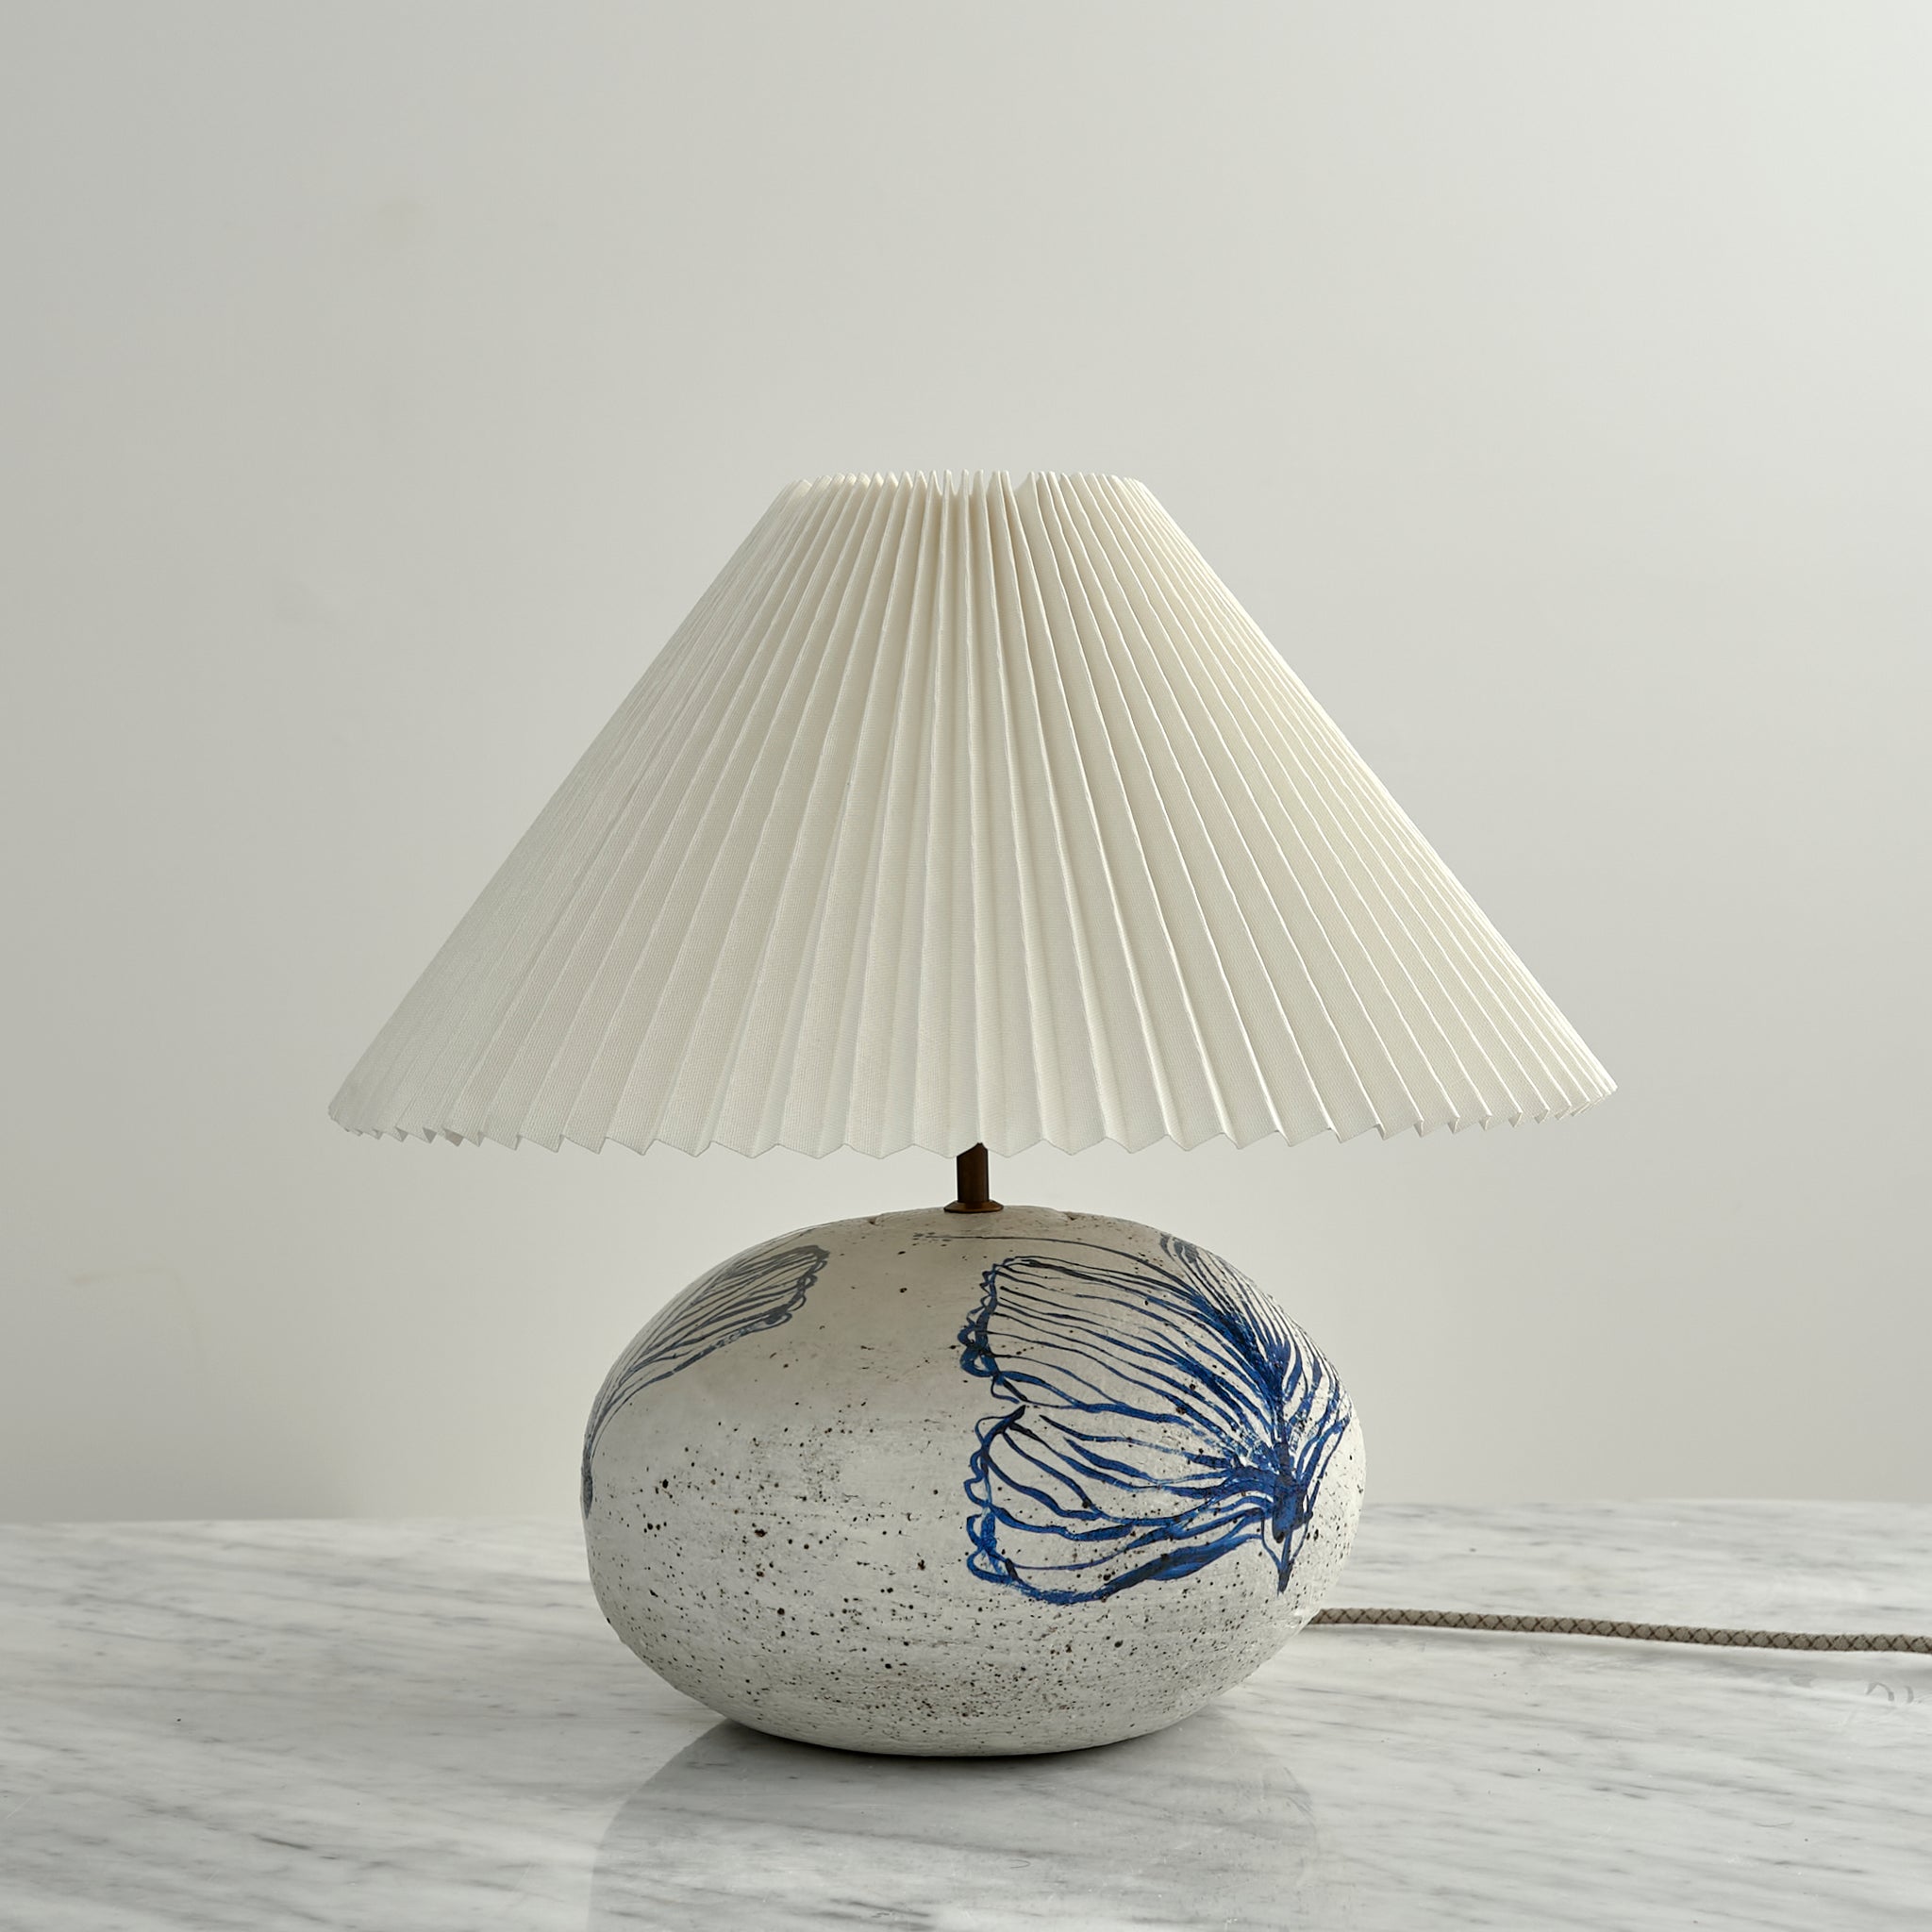 Lamp No. 4